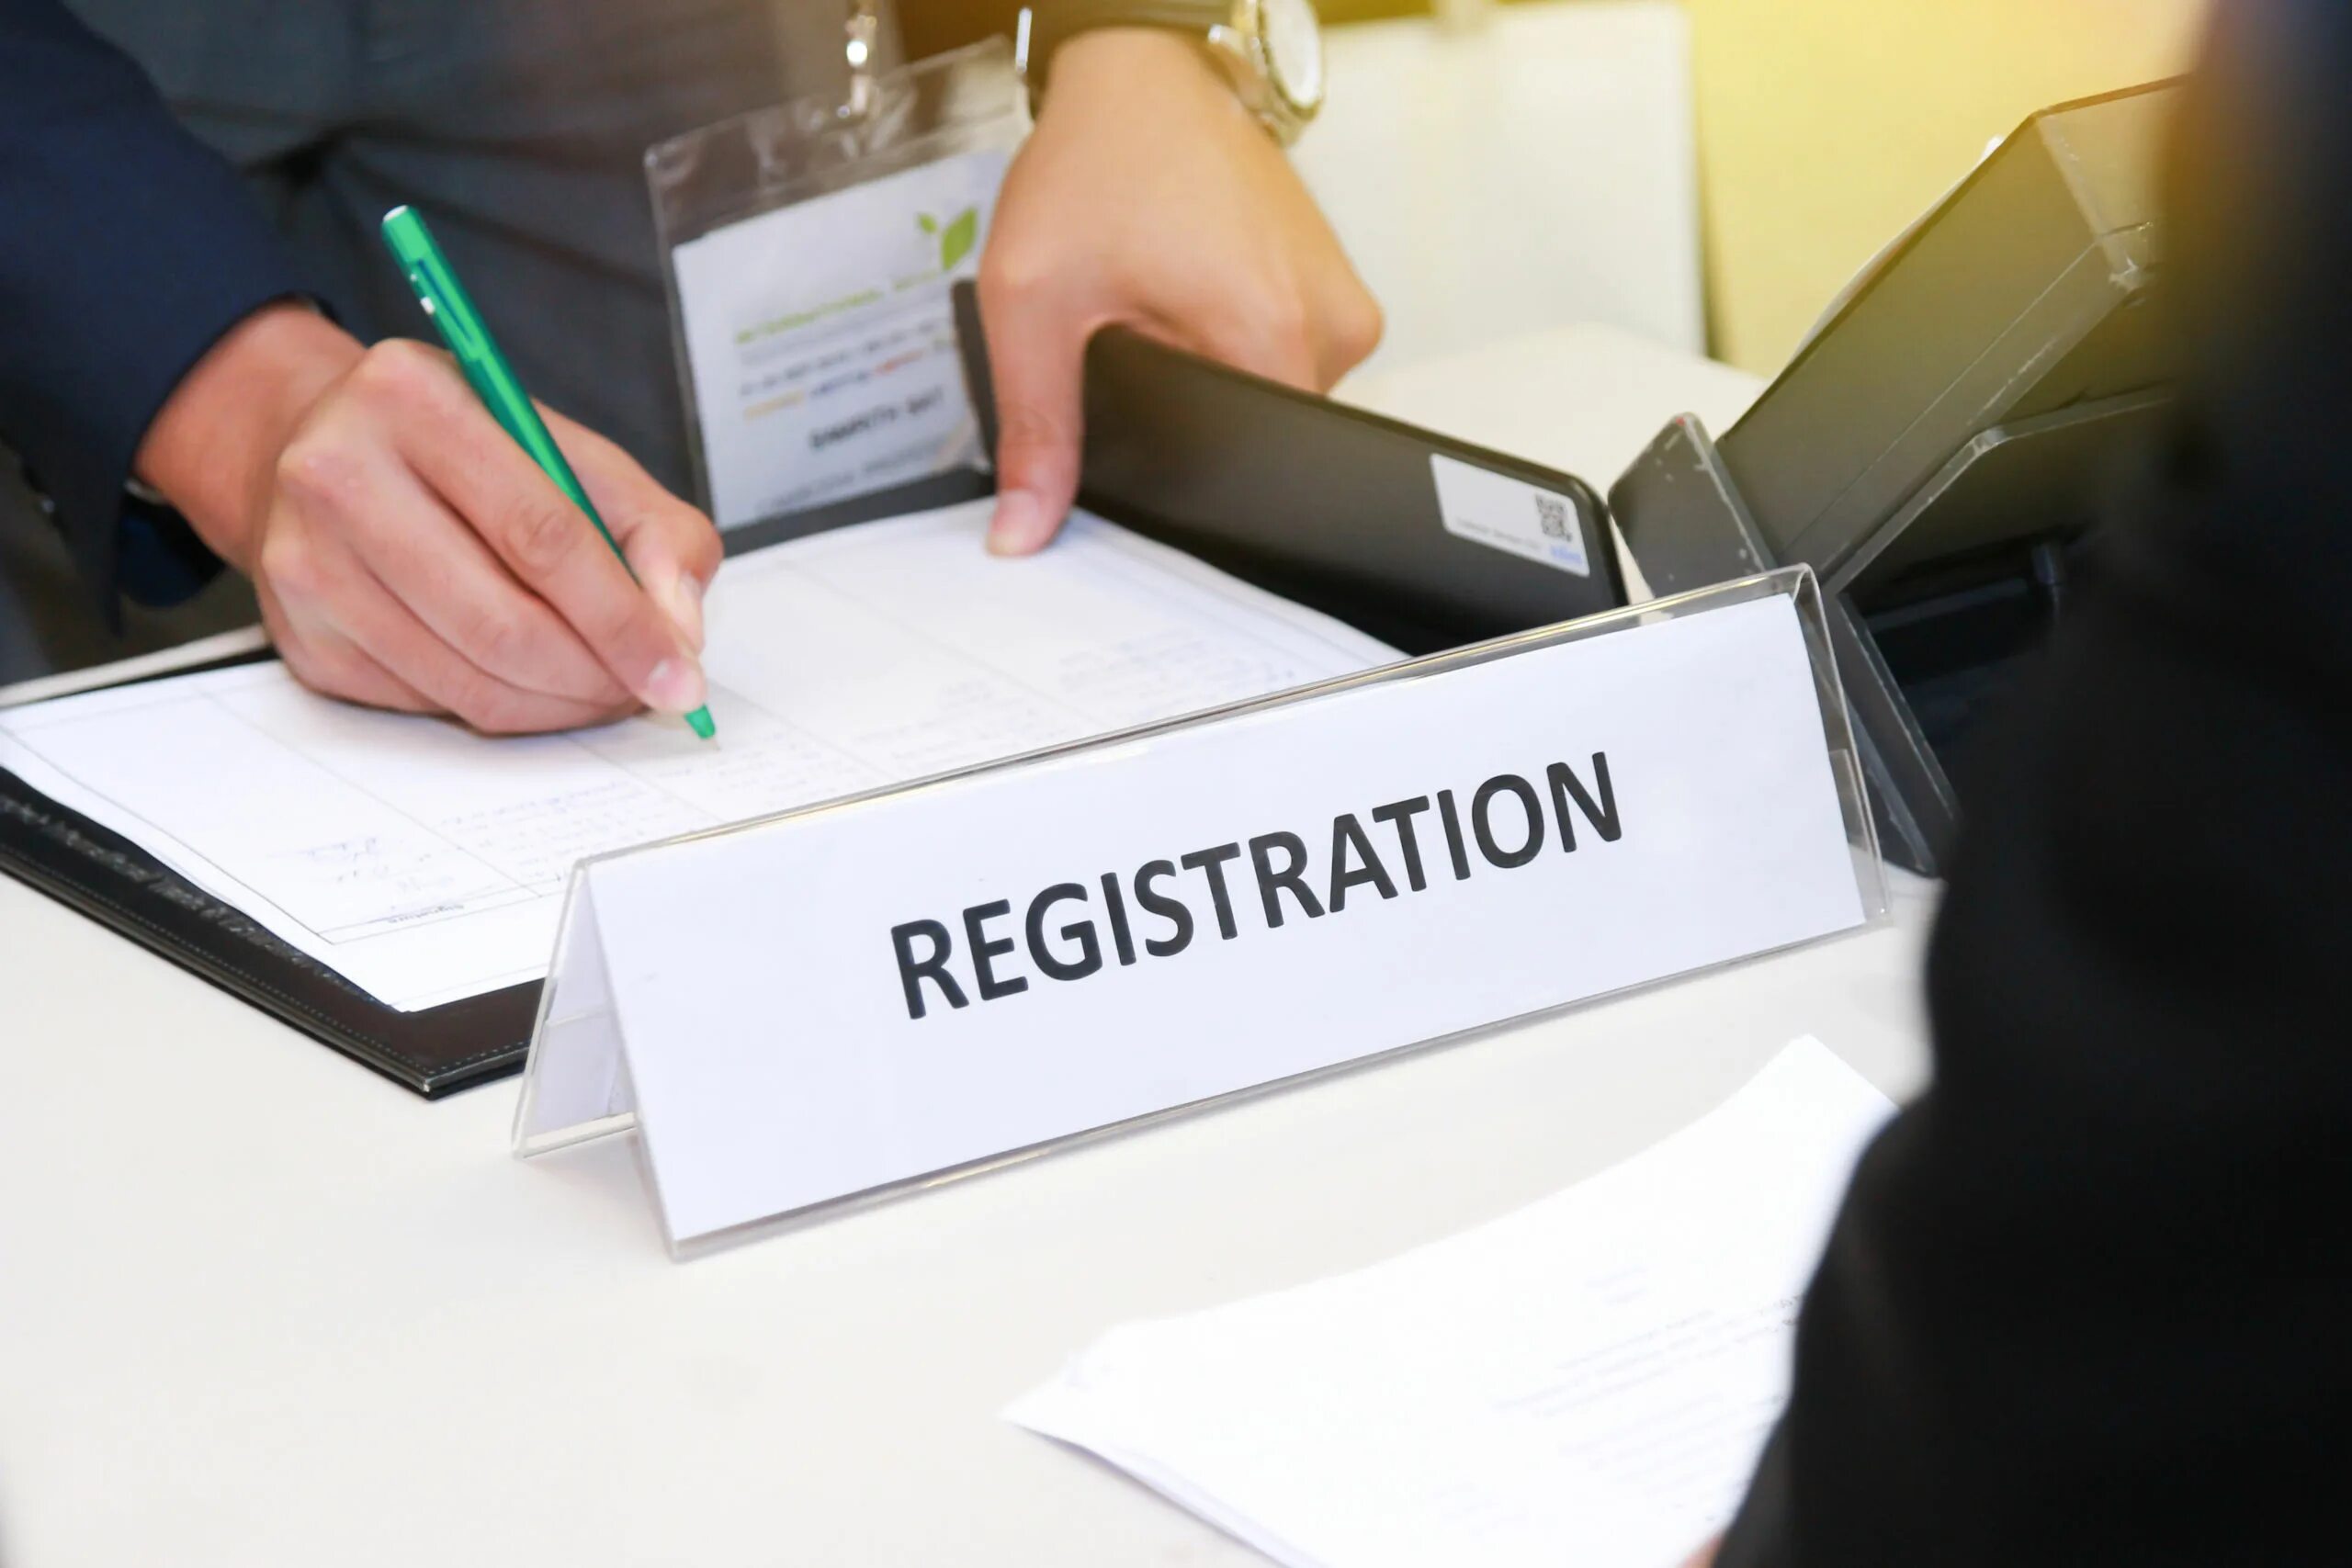 Registration. Регистрация картинка. Регистрация иллюстрация. Registration картинки. Client registration